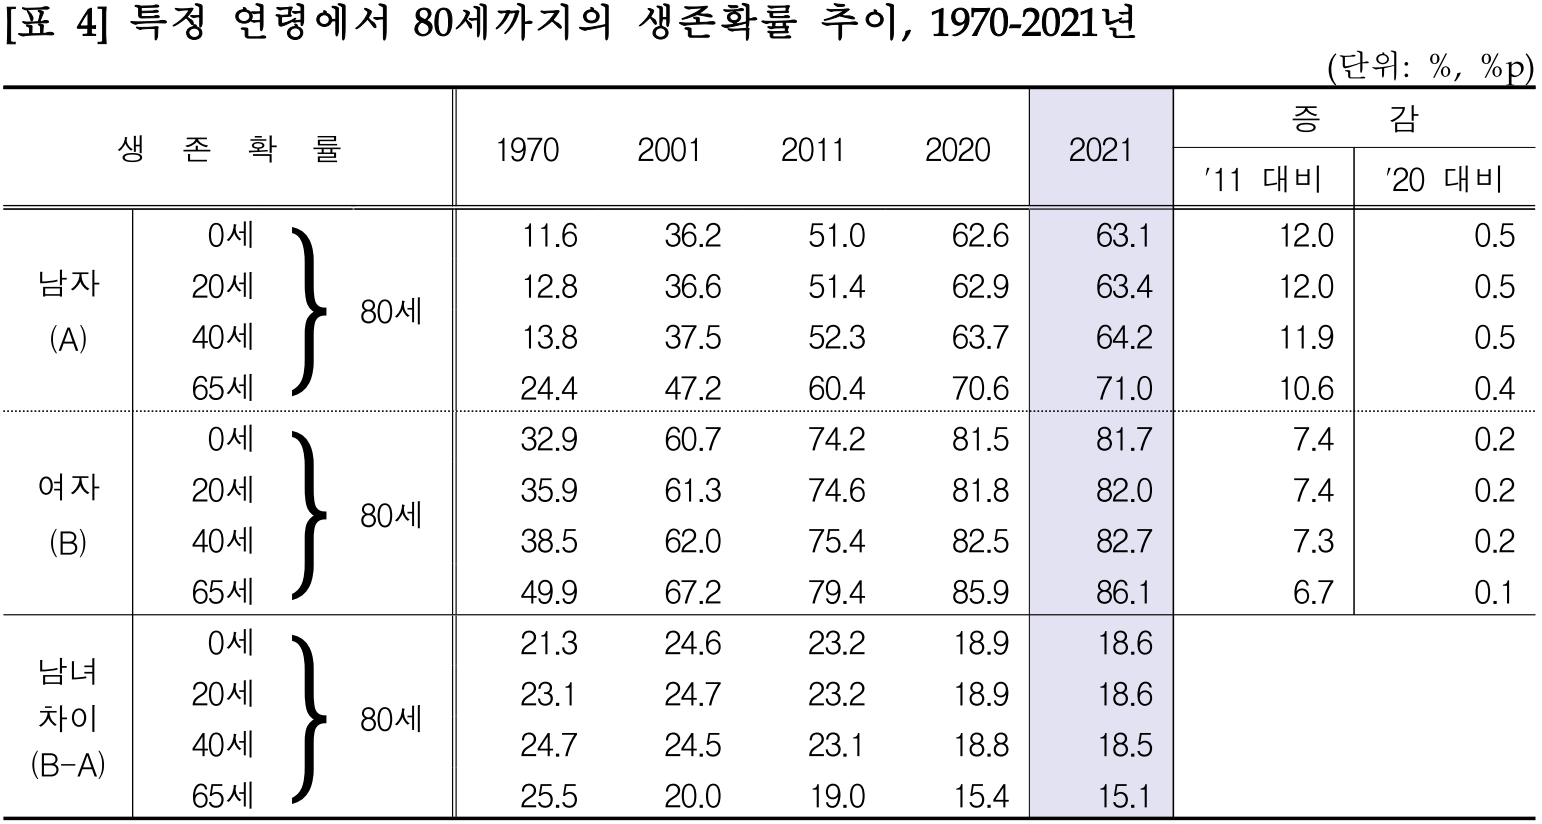 1970년부터 2021년까지 특정 연령에서 80세까지 생존할 확률을 정리한 표